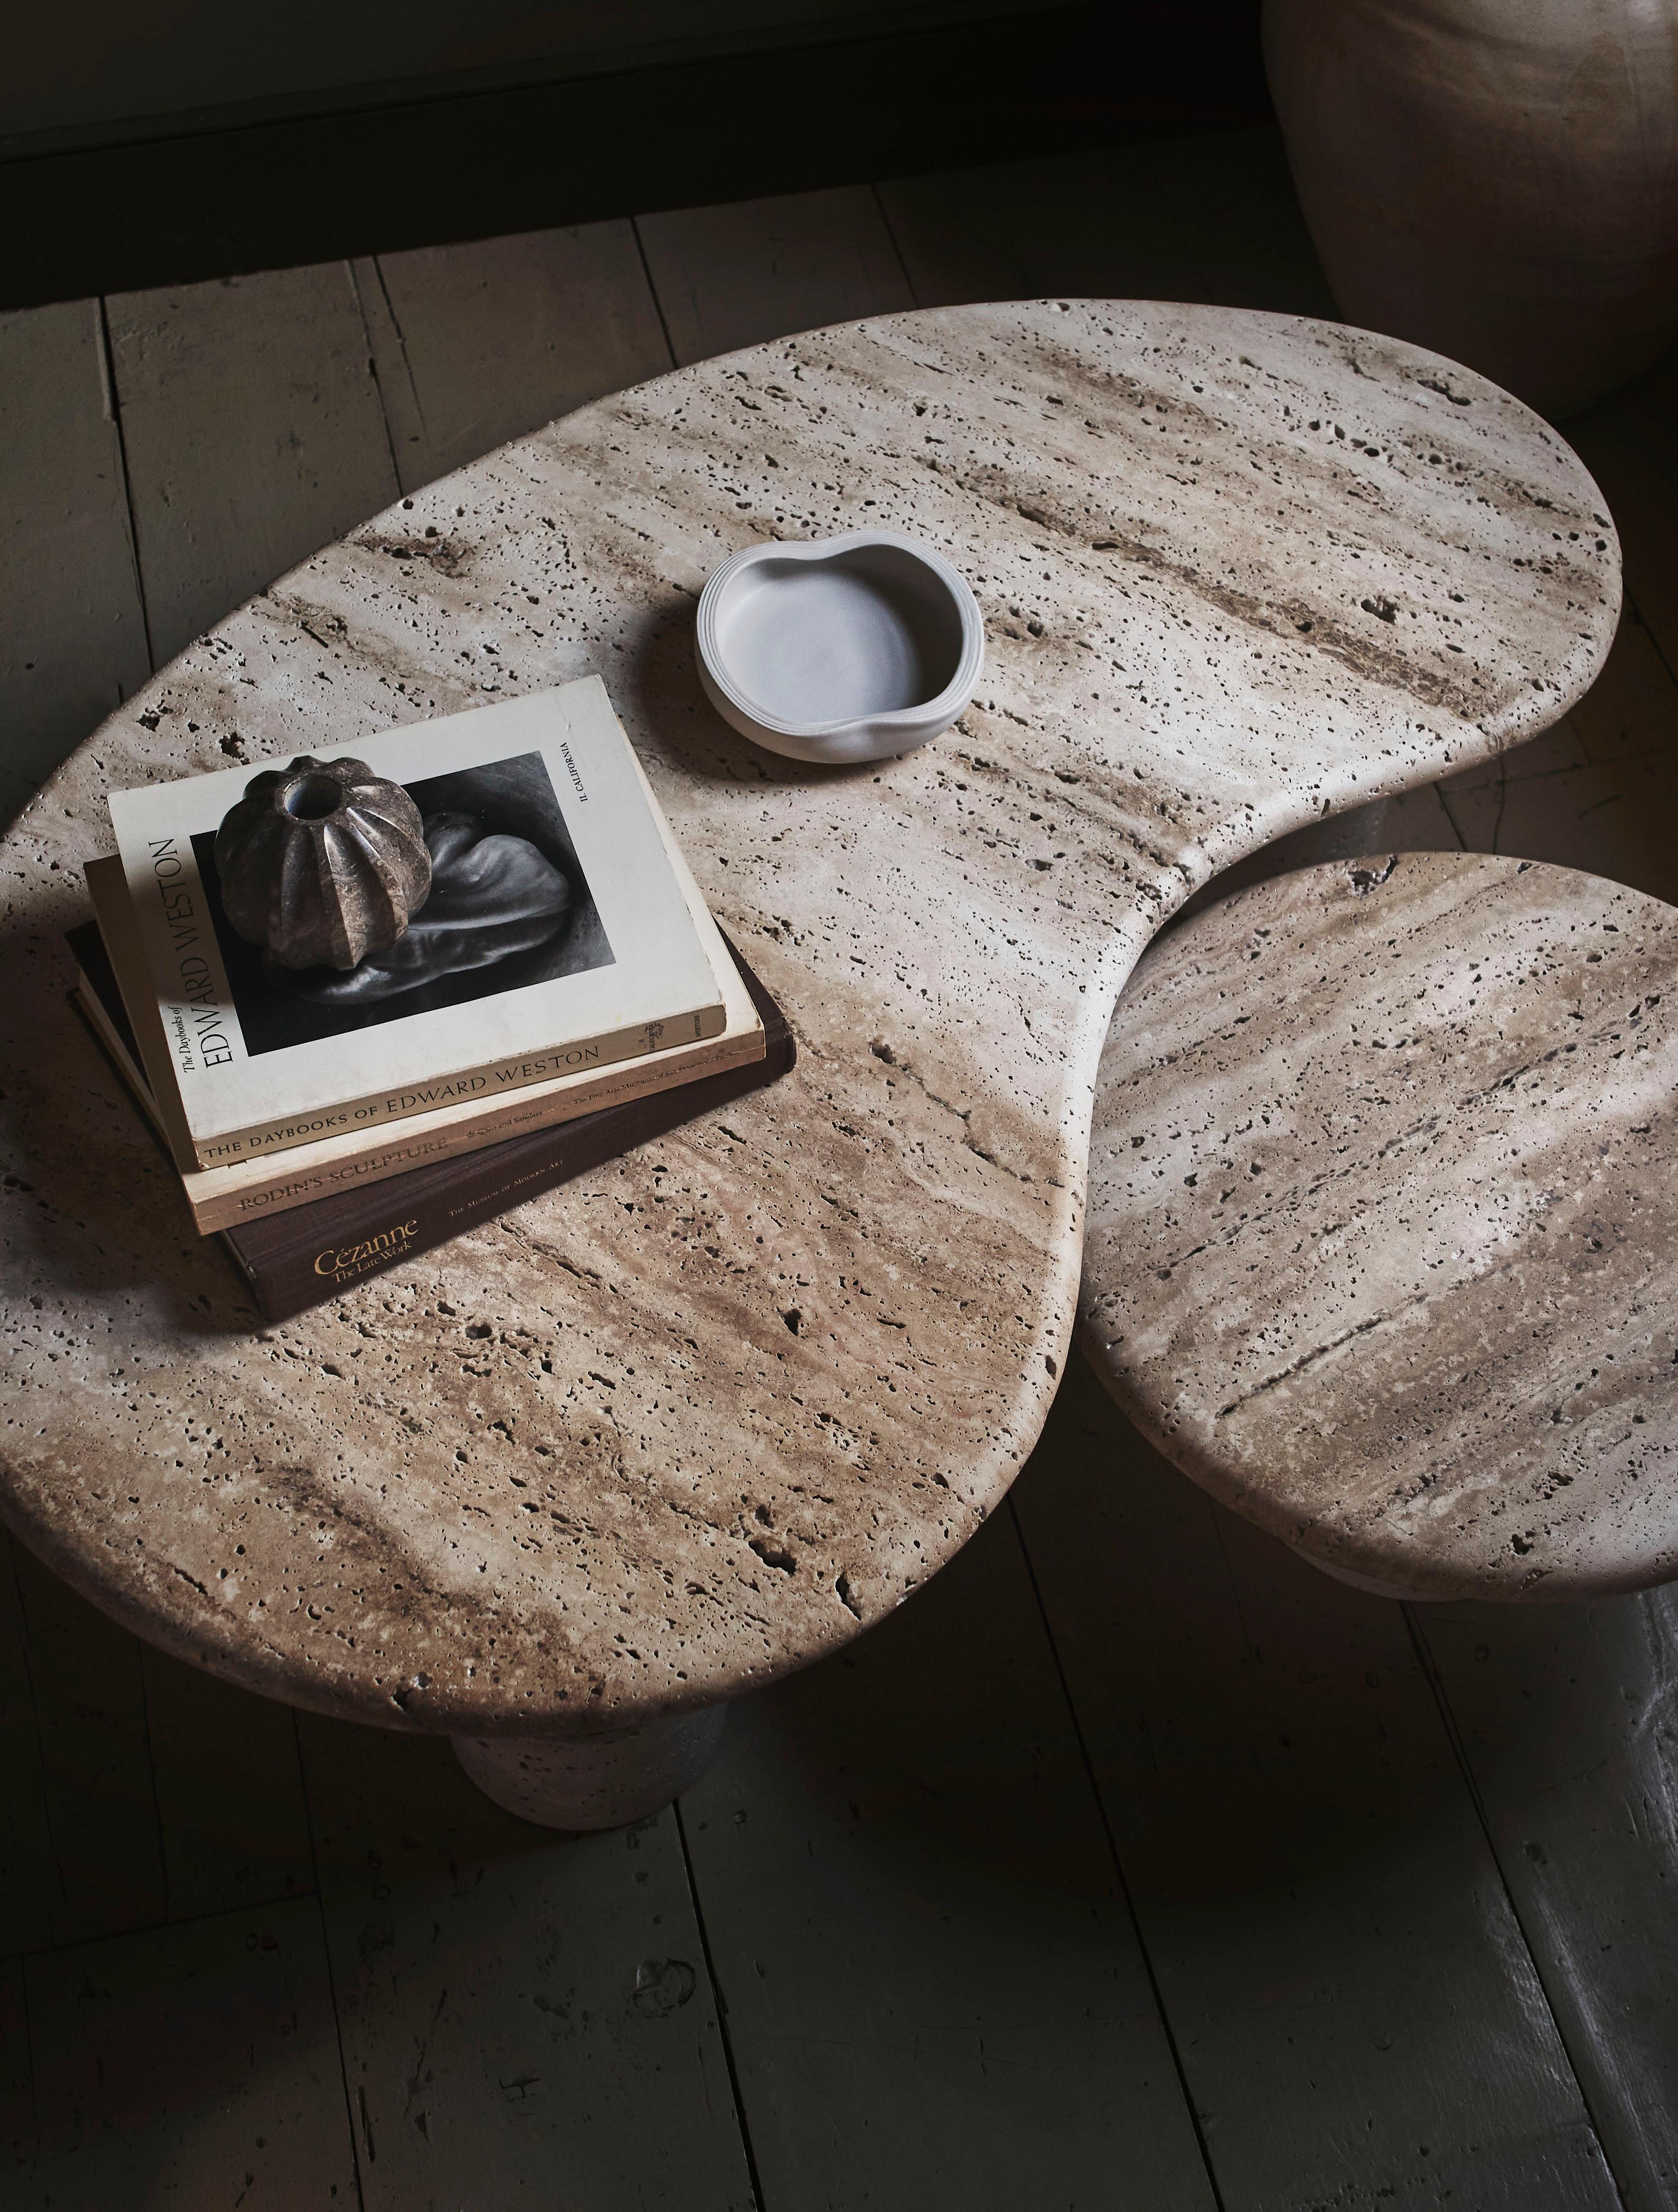 Die Tische aus geschnitztem Travertin sind perfekt ineinander verschachtelt und können individuell an den jeweiligen Raum angepasst werden.

Aufgrund der Natur des MATERIALS gibt es in jedem Travertinblock verschiedene Schattierungen und